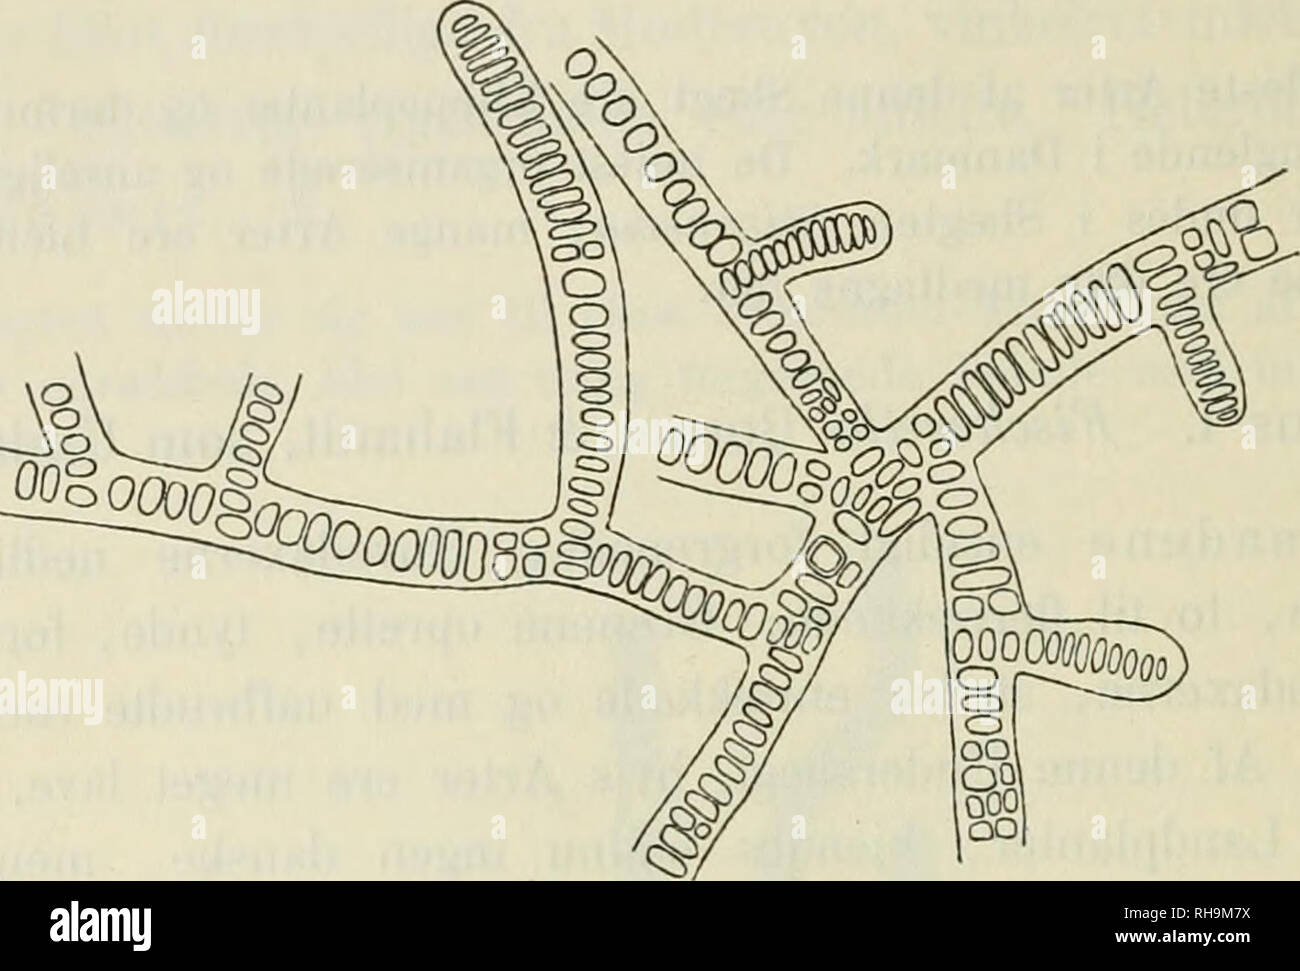 . Botanisk tidsskrift. Plants; Plants -- Denmark. 408 117. Stigonema ocellatum (Dillw.) Thuret (Hieronymus). Thuret, Essai de classification des Nostochinees, Annal. d. Sc. nat., 6^ serie,* bot., I, p. 380, 1875; Hieronymus, Hedwigia, Bd. XXXIV, p. 158, 1895.. Fig. 38. Stigonema ocellatum (Dillw.) Thuret (Hieronymus.) Brudstykke af en Traad med Grene af Iste og Men Orden. En enkelt Heterocyst tilstede. ca. 66 : 1. T hall us tueformet eller pudeforraet, filtet, smudsig oliven- farvet eller blaagront. Traadene oftest oprette med nedliggende Basis, uregelmffissigt forgrenede, 20—45 (sj. 50) /i ty Stock Photo